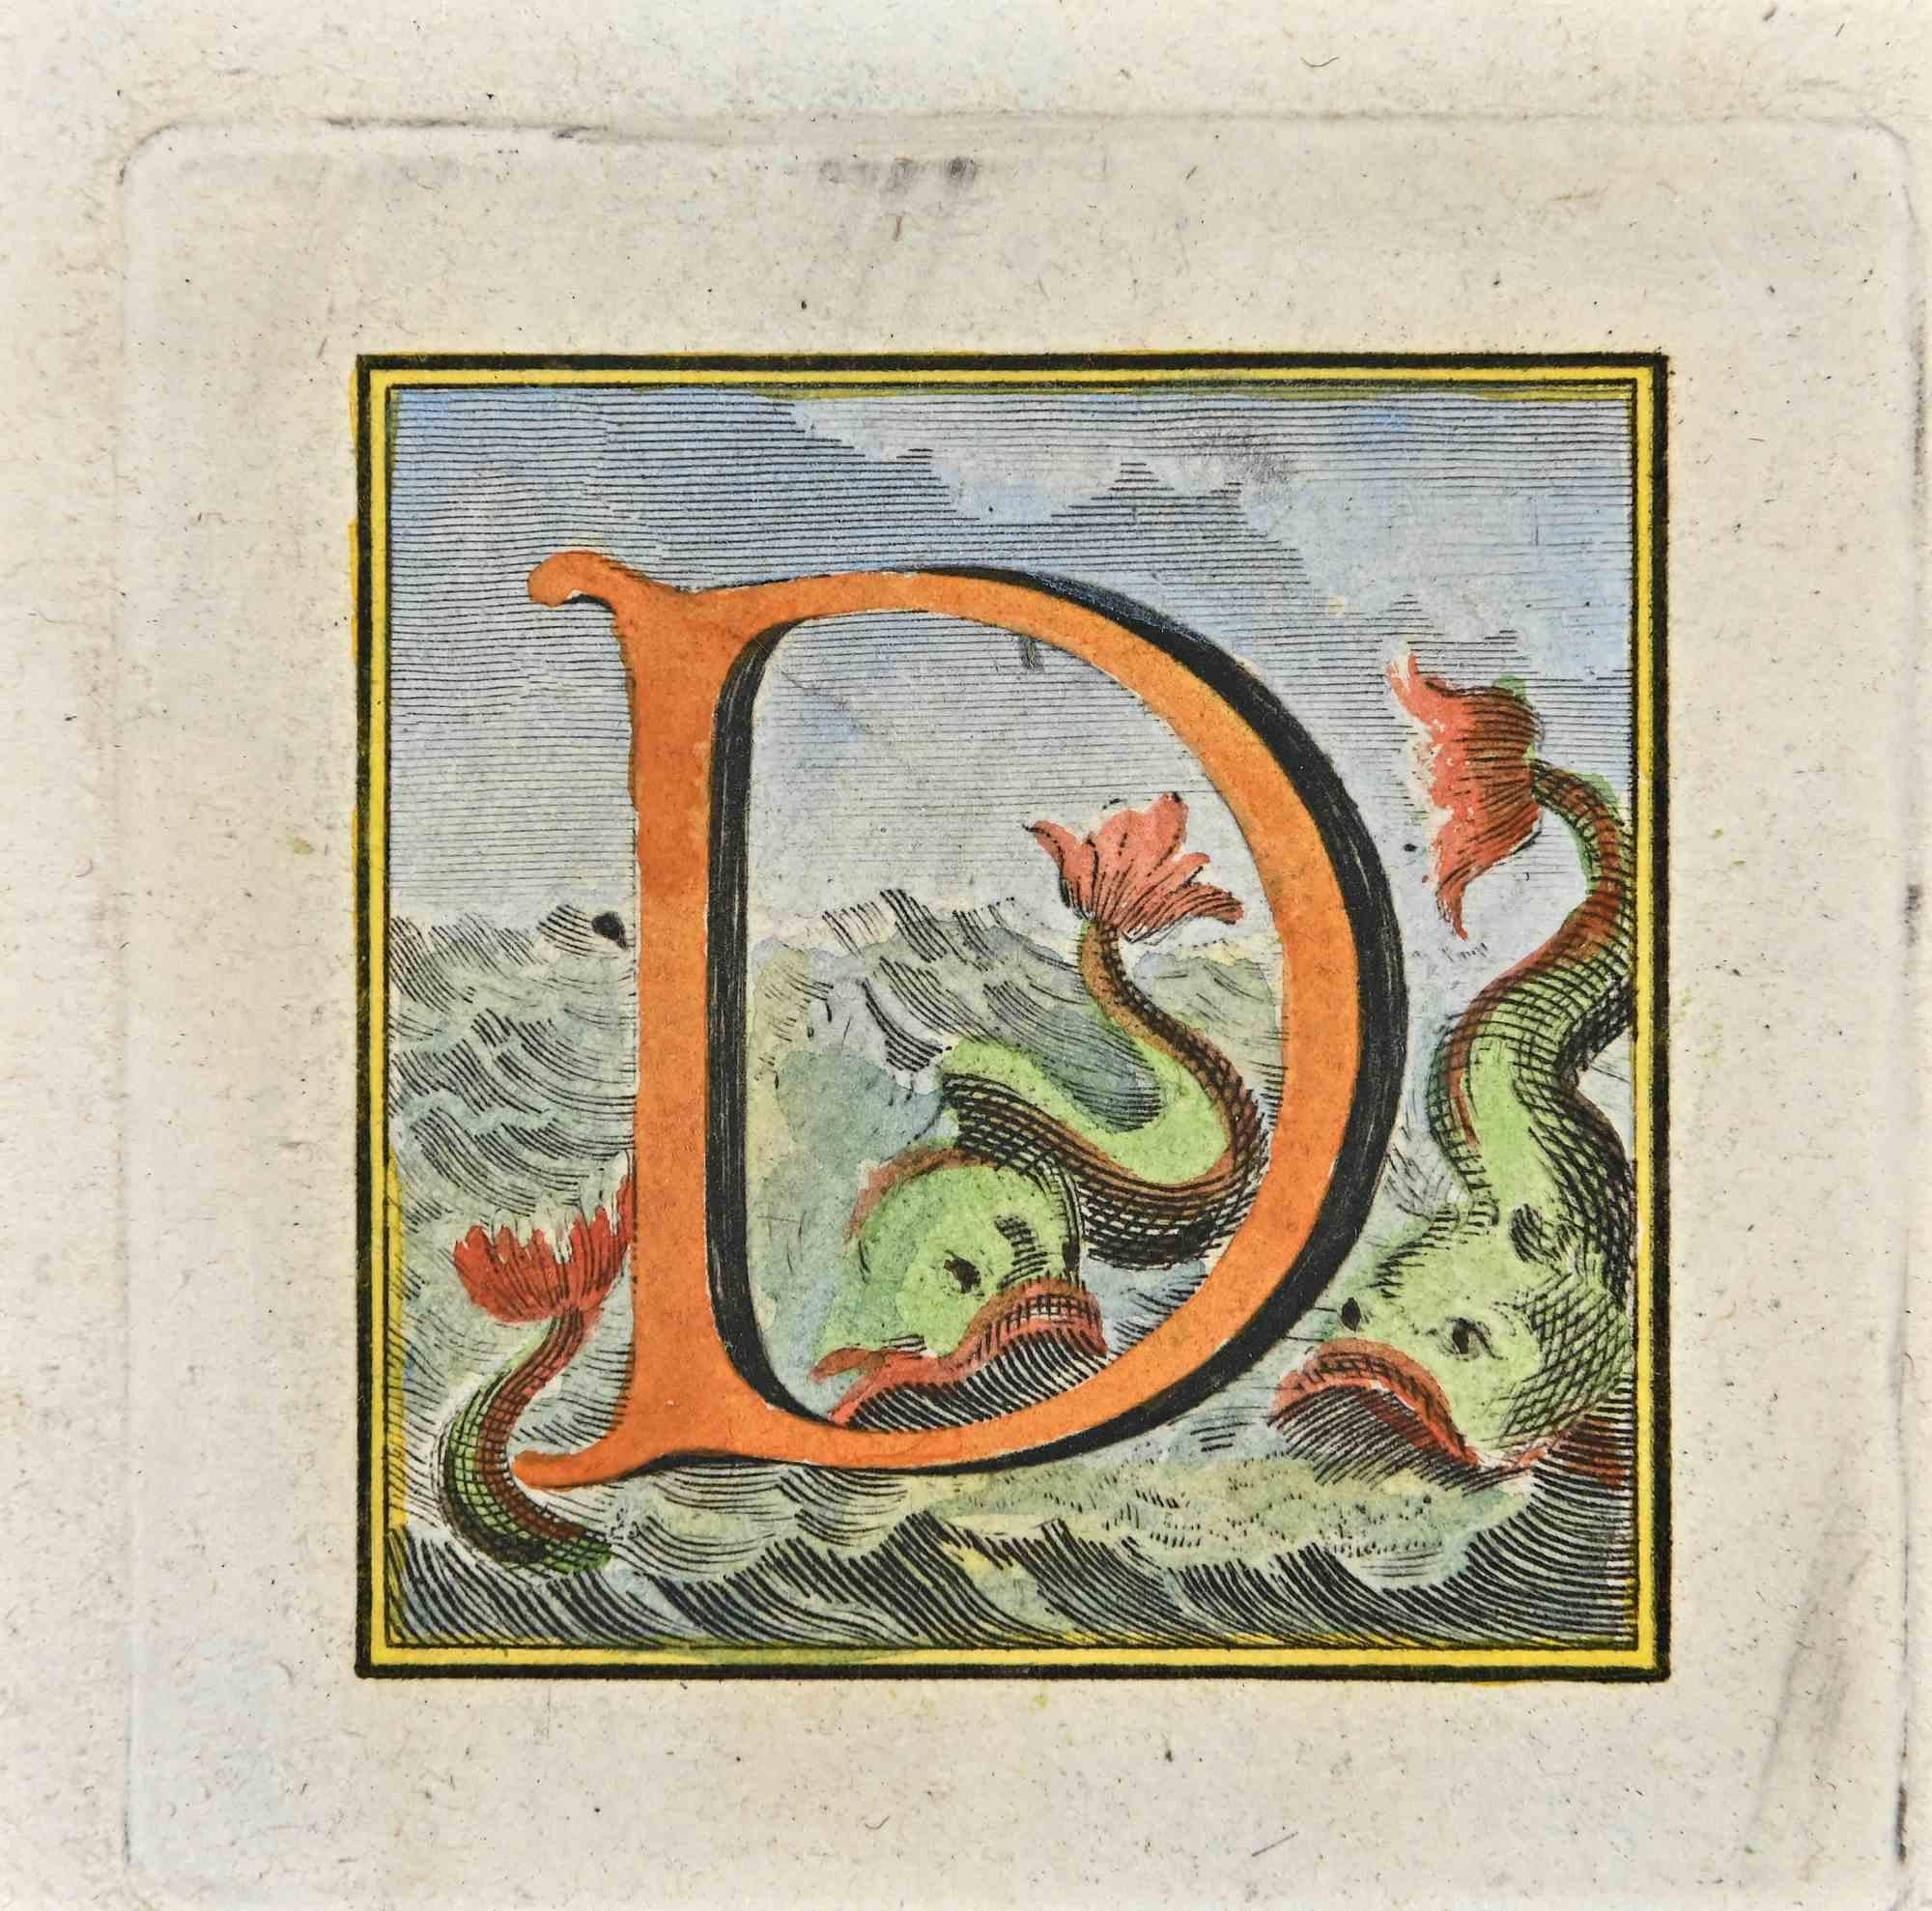 Lettre de l'Alphabet D de la série "Antiquités d'Herculanum", est une gravure sur papier réalisée par Luigi Vanvitelli au 18ème siècle.

Bonnes conditions.

La gravure appartient à la suite d'estampes "Antiquités d'Herculanum exposées" (titre